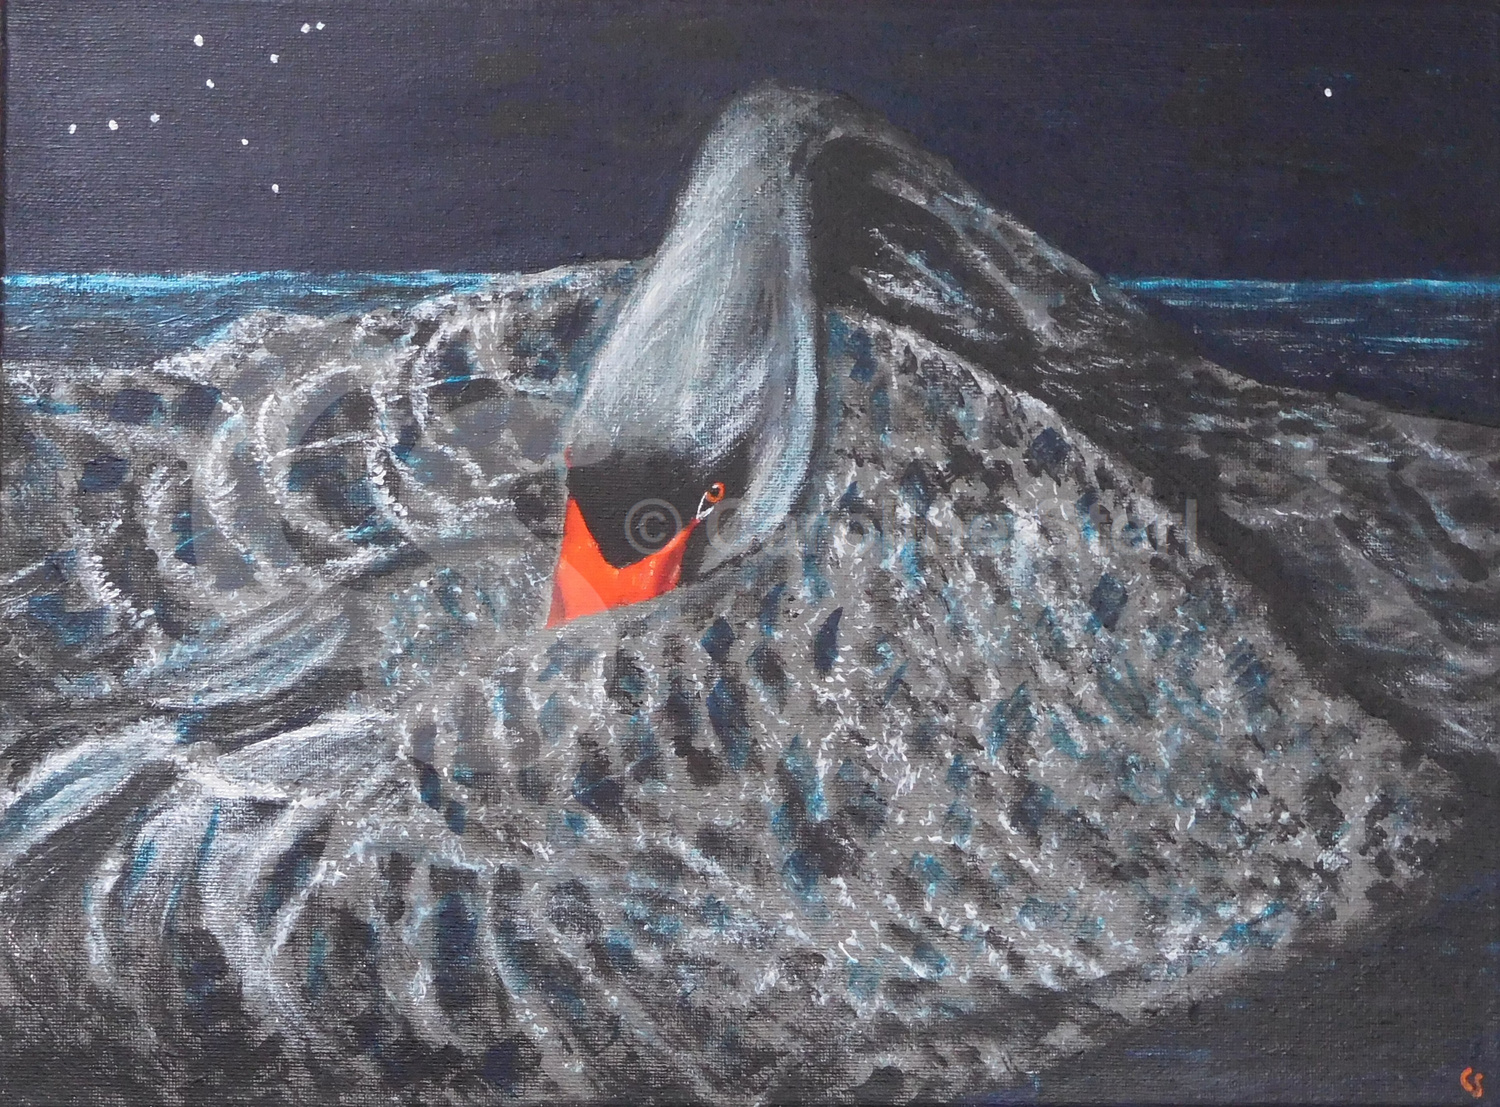 Painting: Black Swan